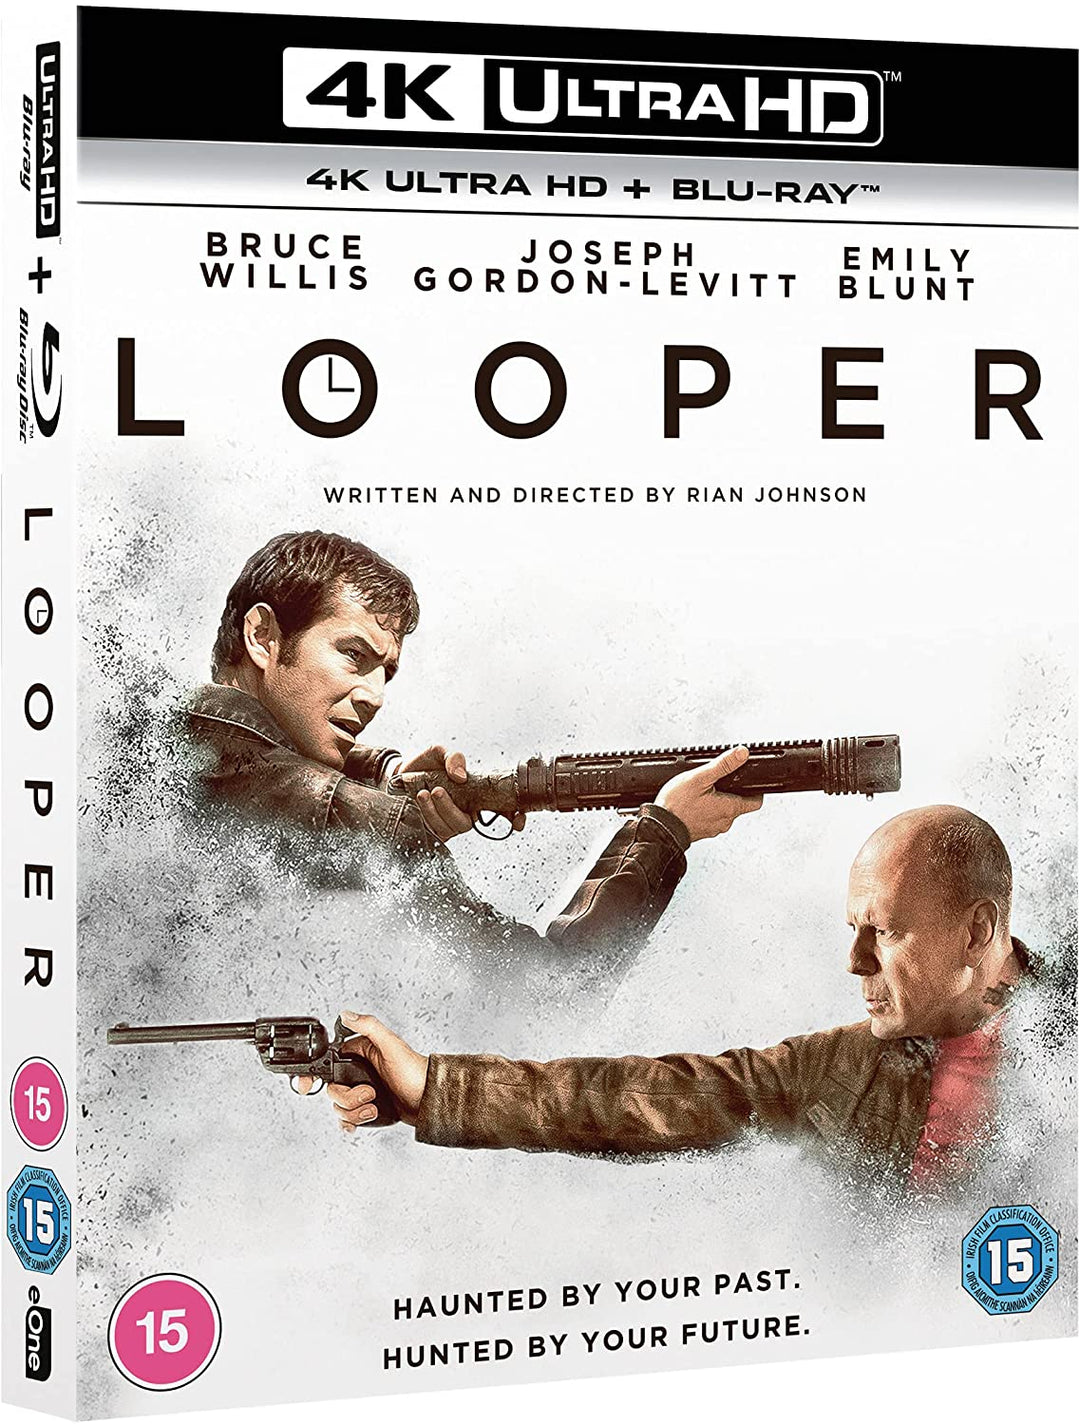 Looper [4K Ultra HD] [2012] [Region Free] - [Blu-ray]